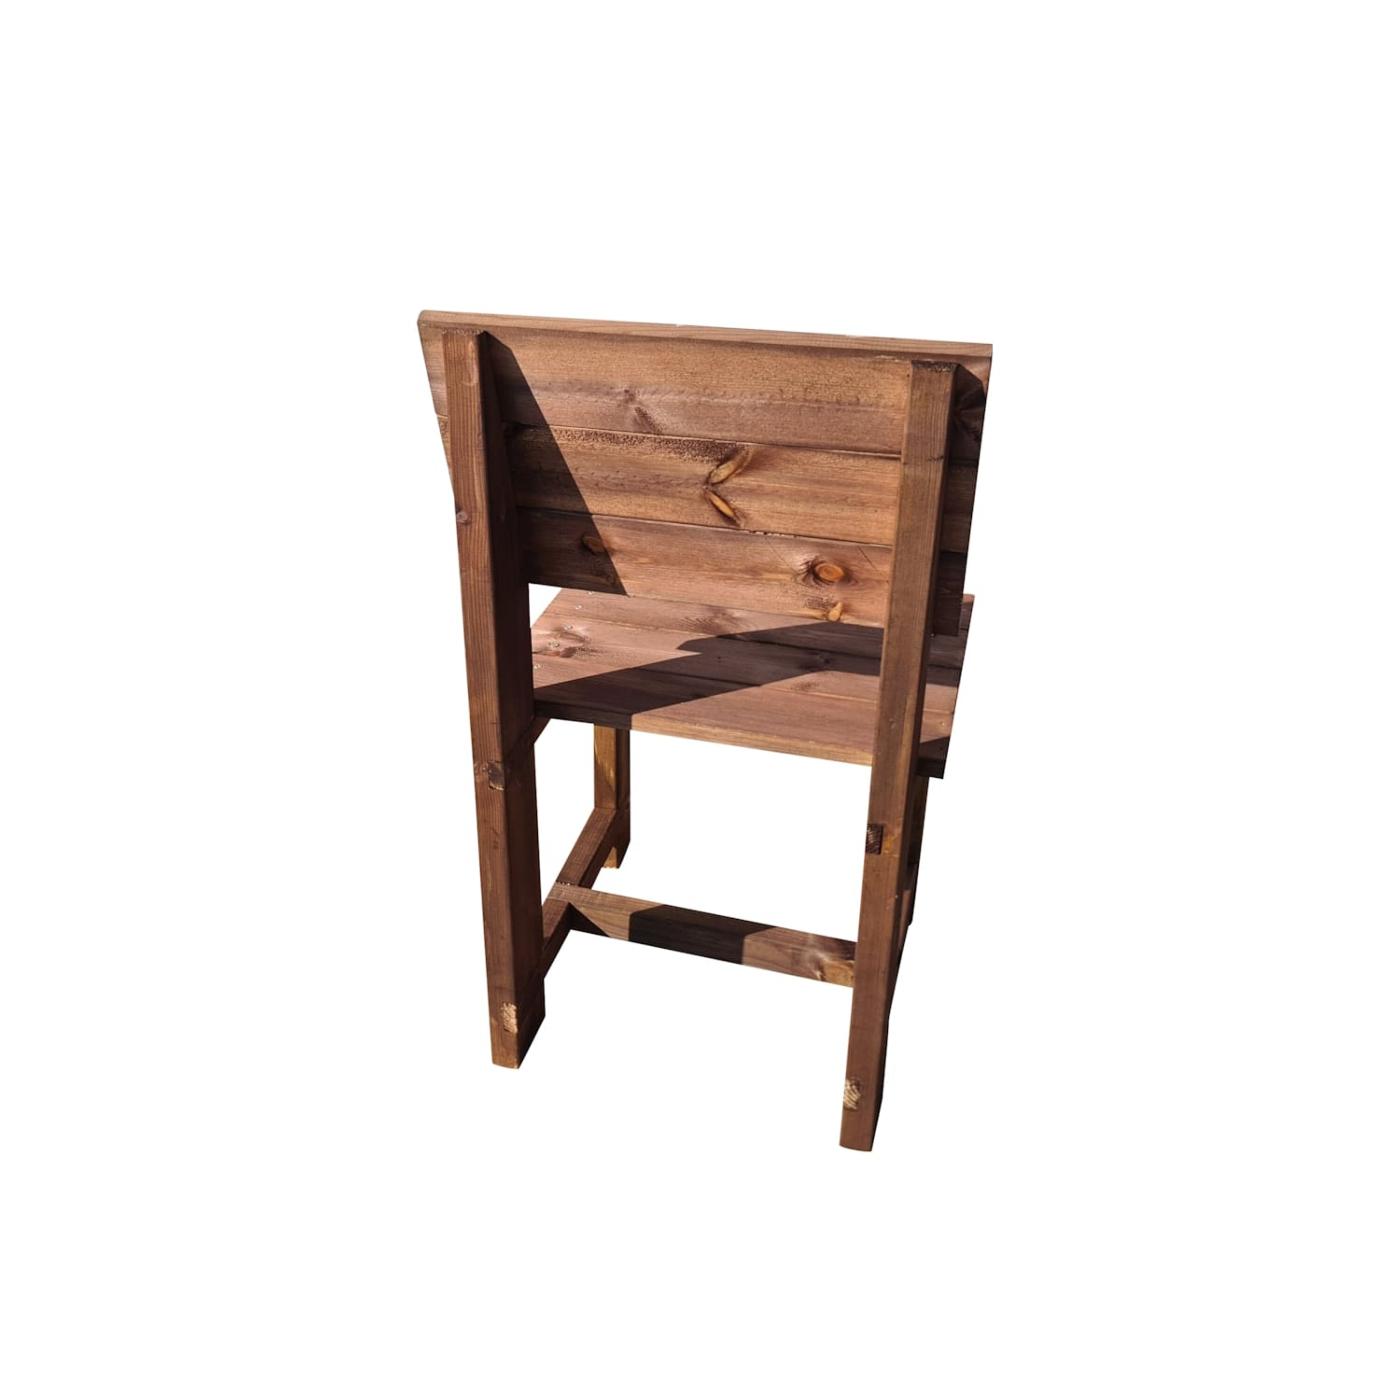 Conjunt de 4 cadires de fusta per a l'exterior MASGAMES BATEA pintada lasur